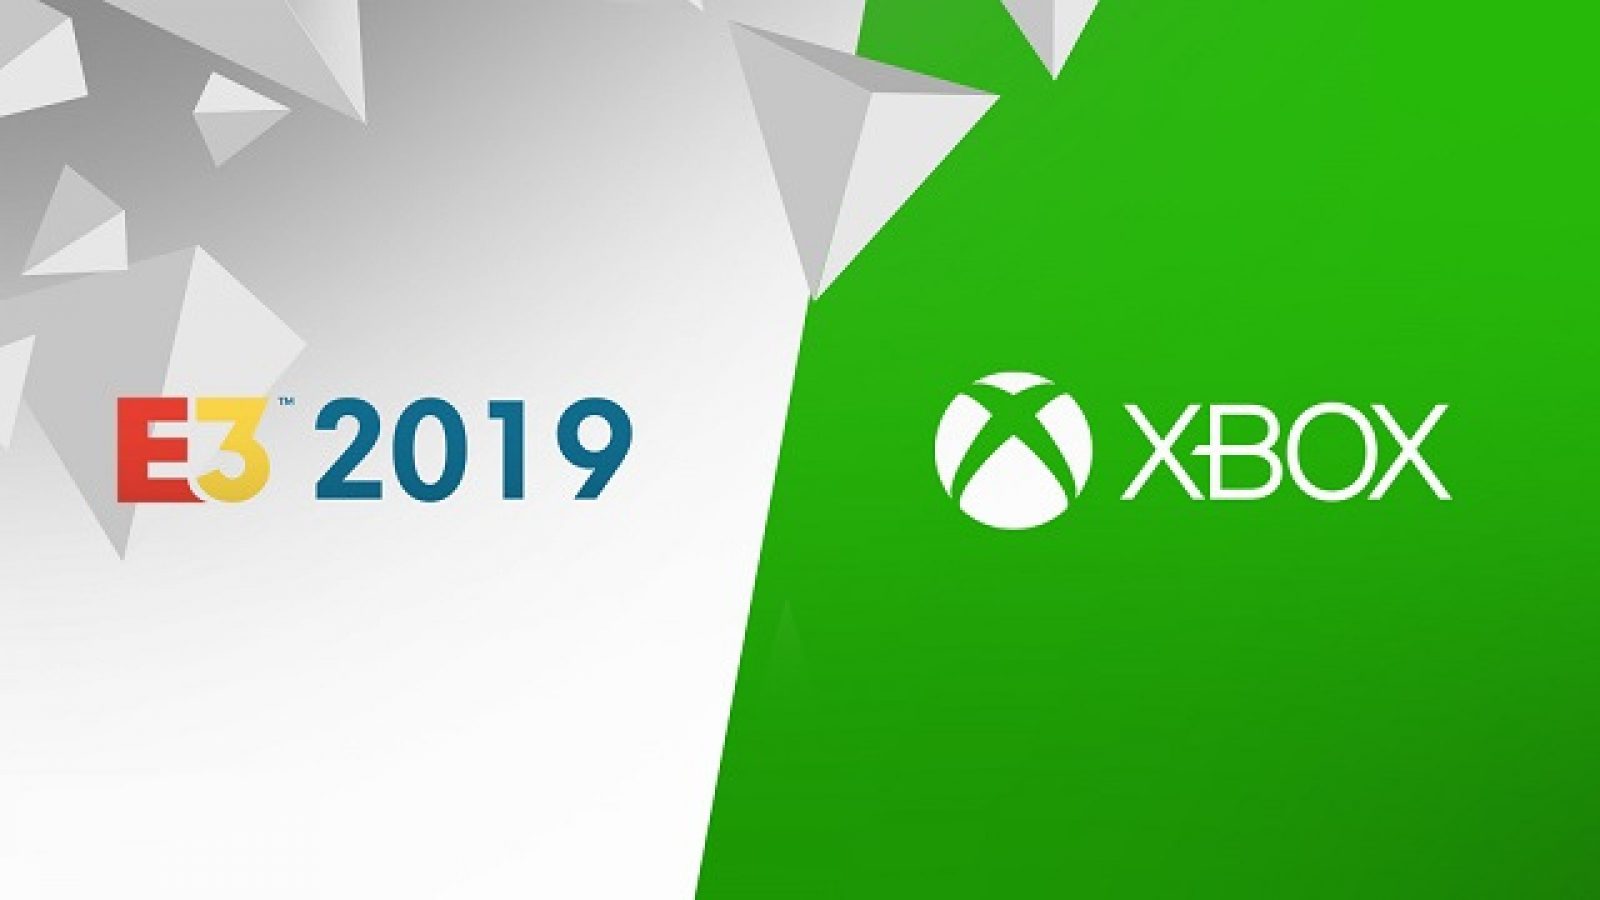 E3 2019 Xbox release date